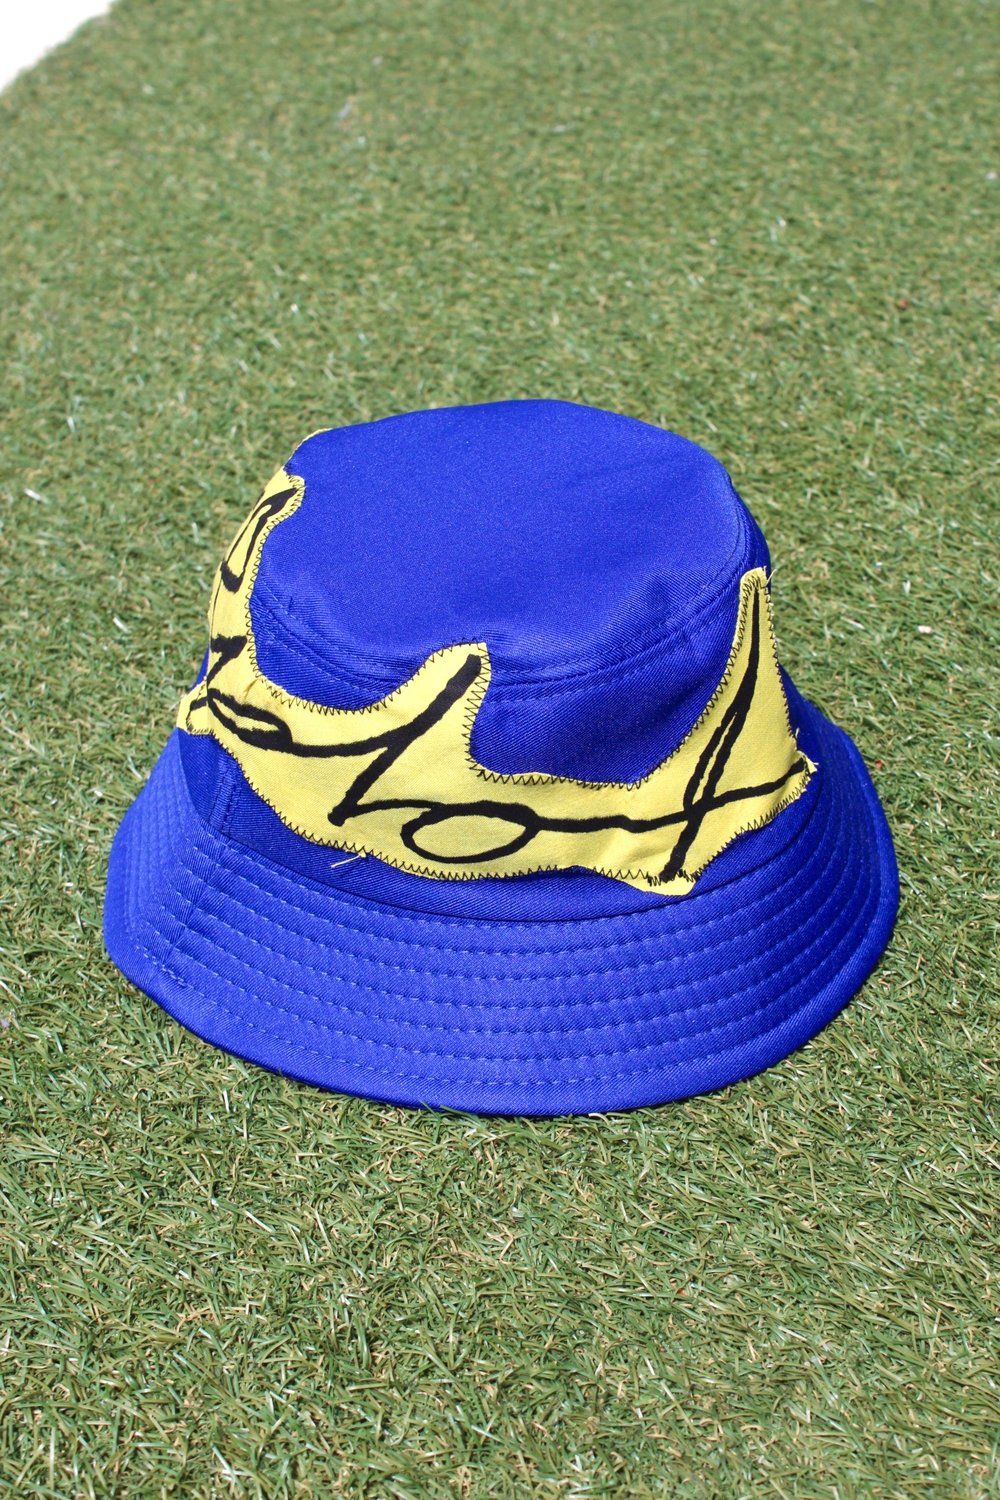 near perfect bucket hat in blue 